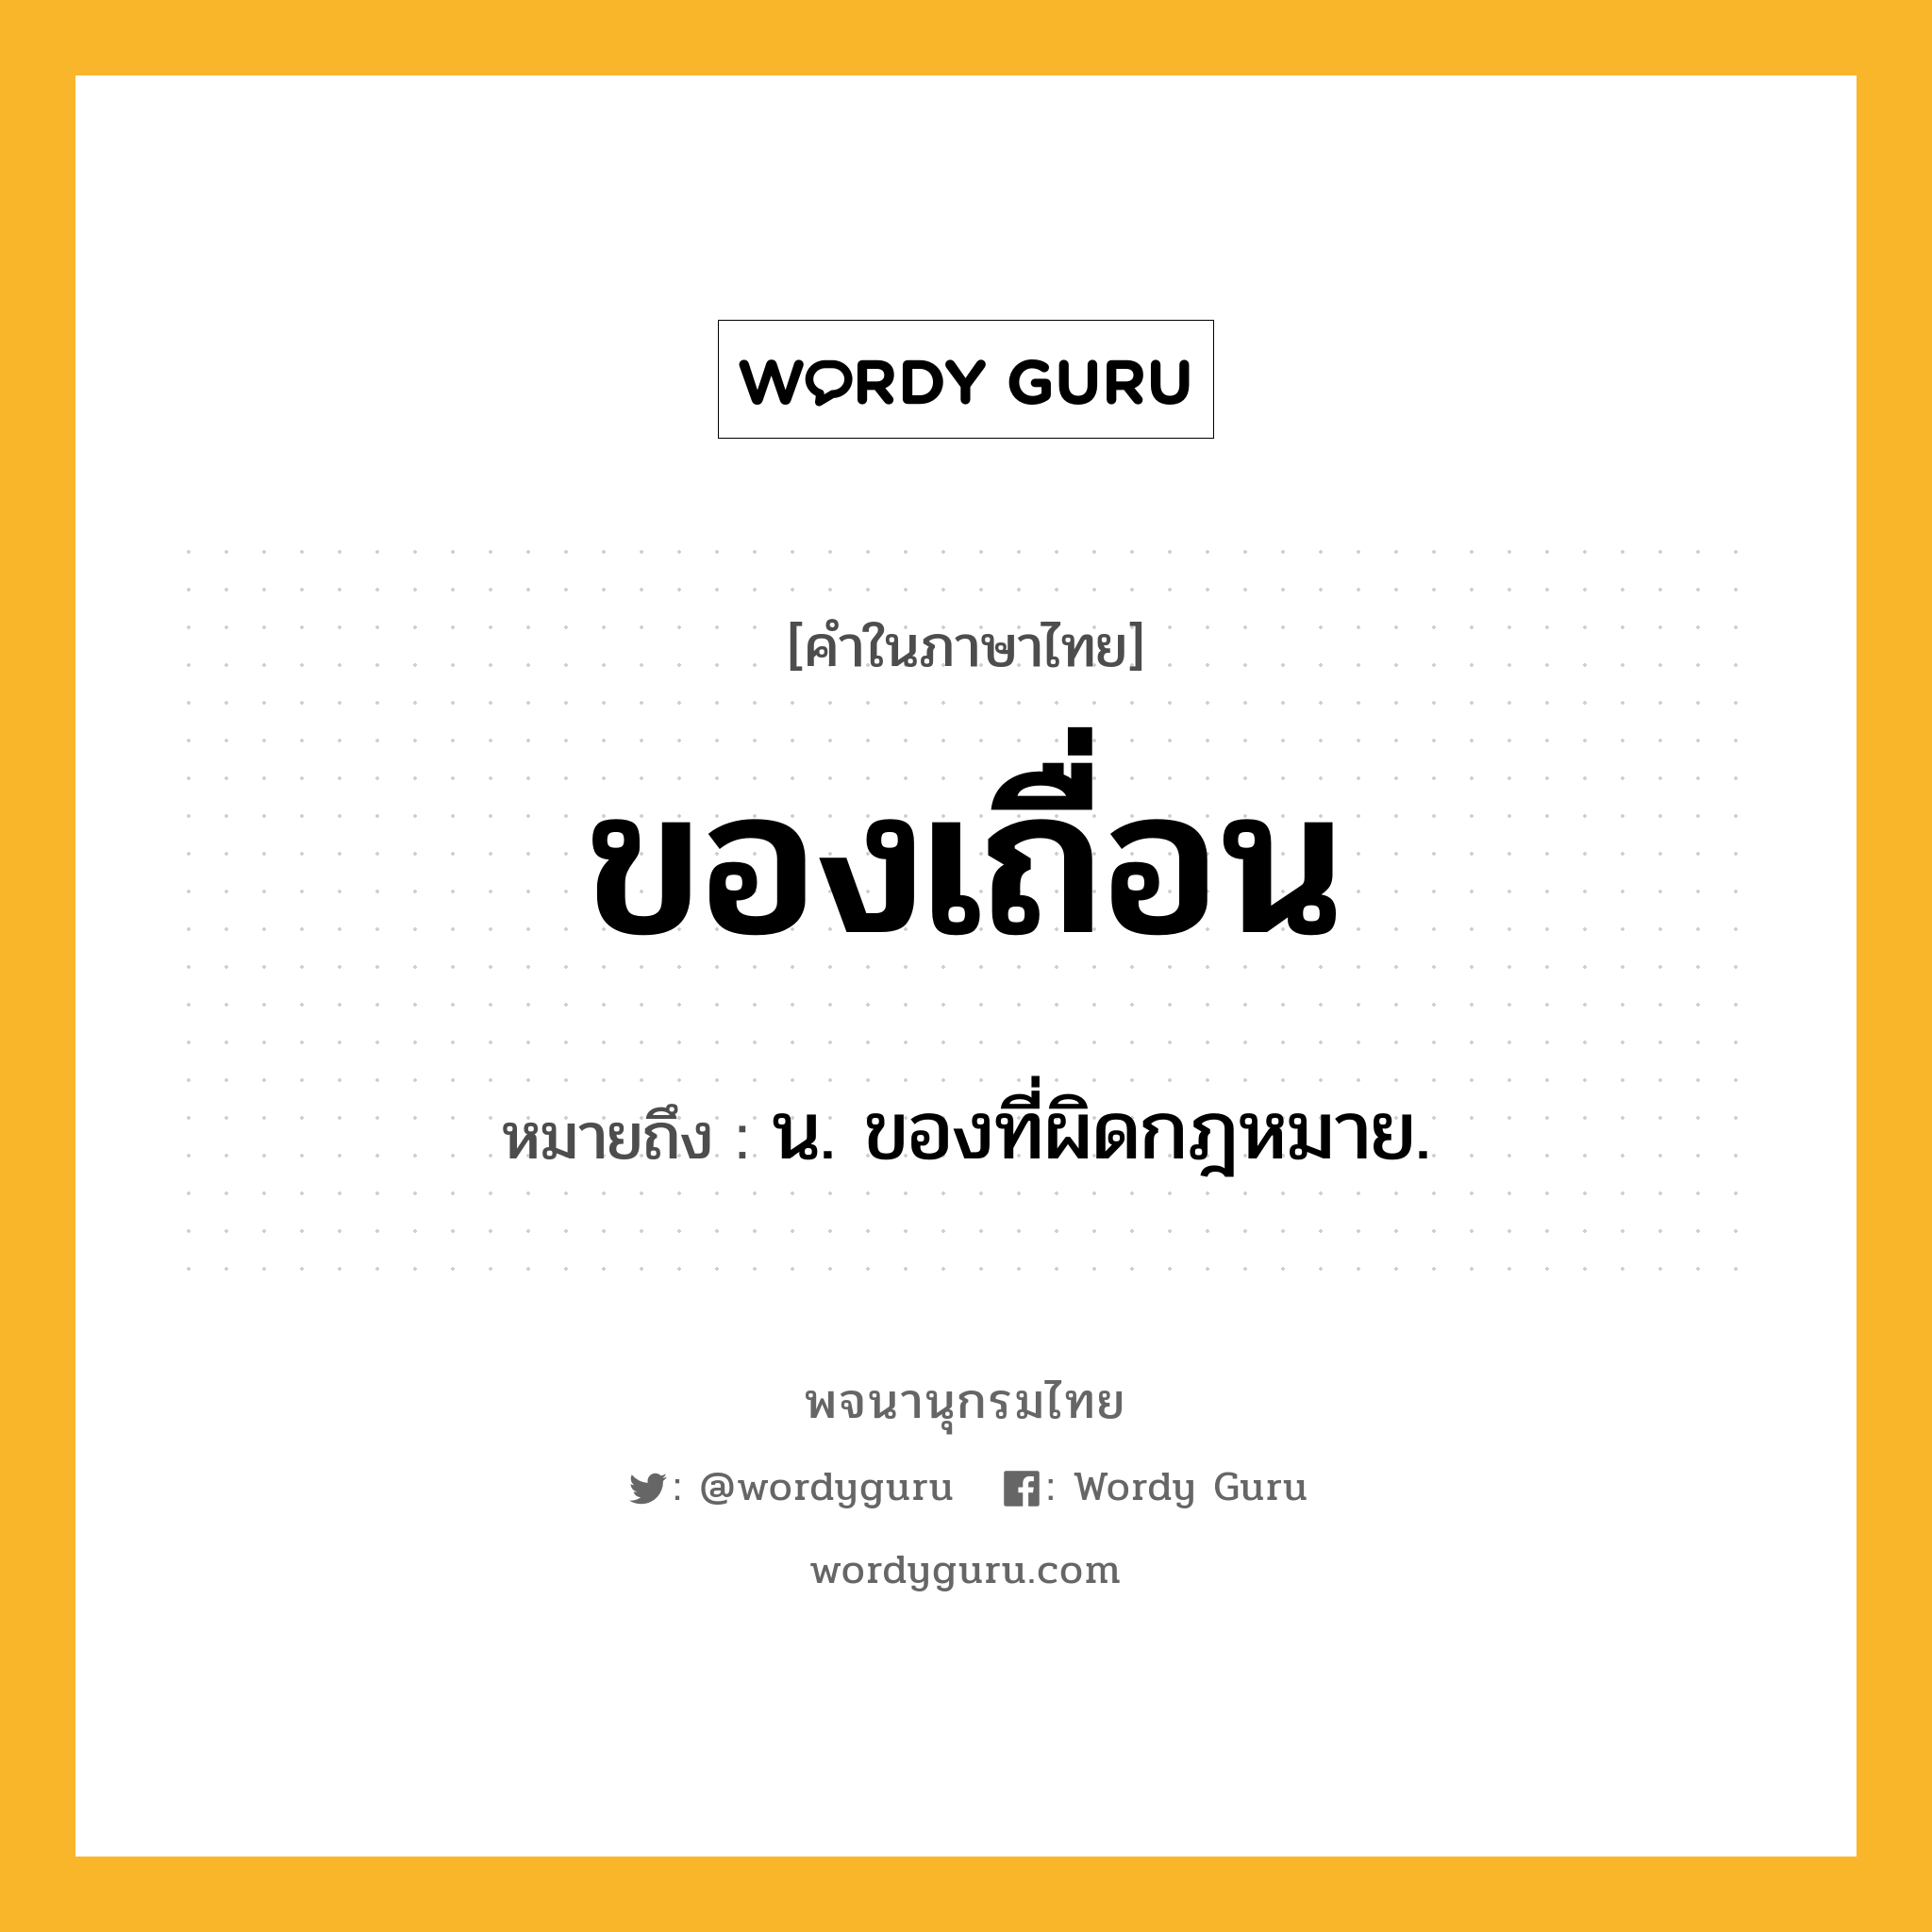 ของเถื่อน ความหมาย หมายถึงอะไร?, คำในภาษาไทย ของเถื่อน หมายถึง น. ของที่ผิดกฎหมาย.